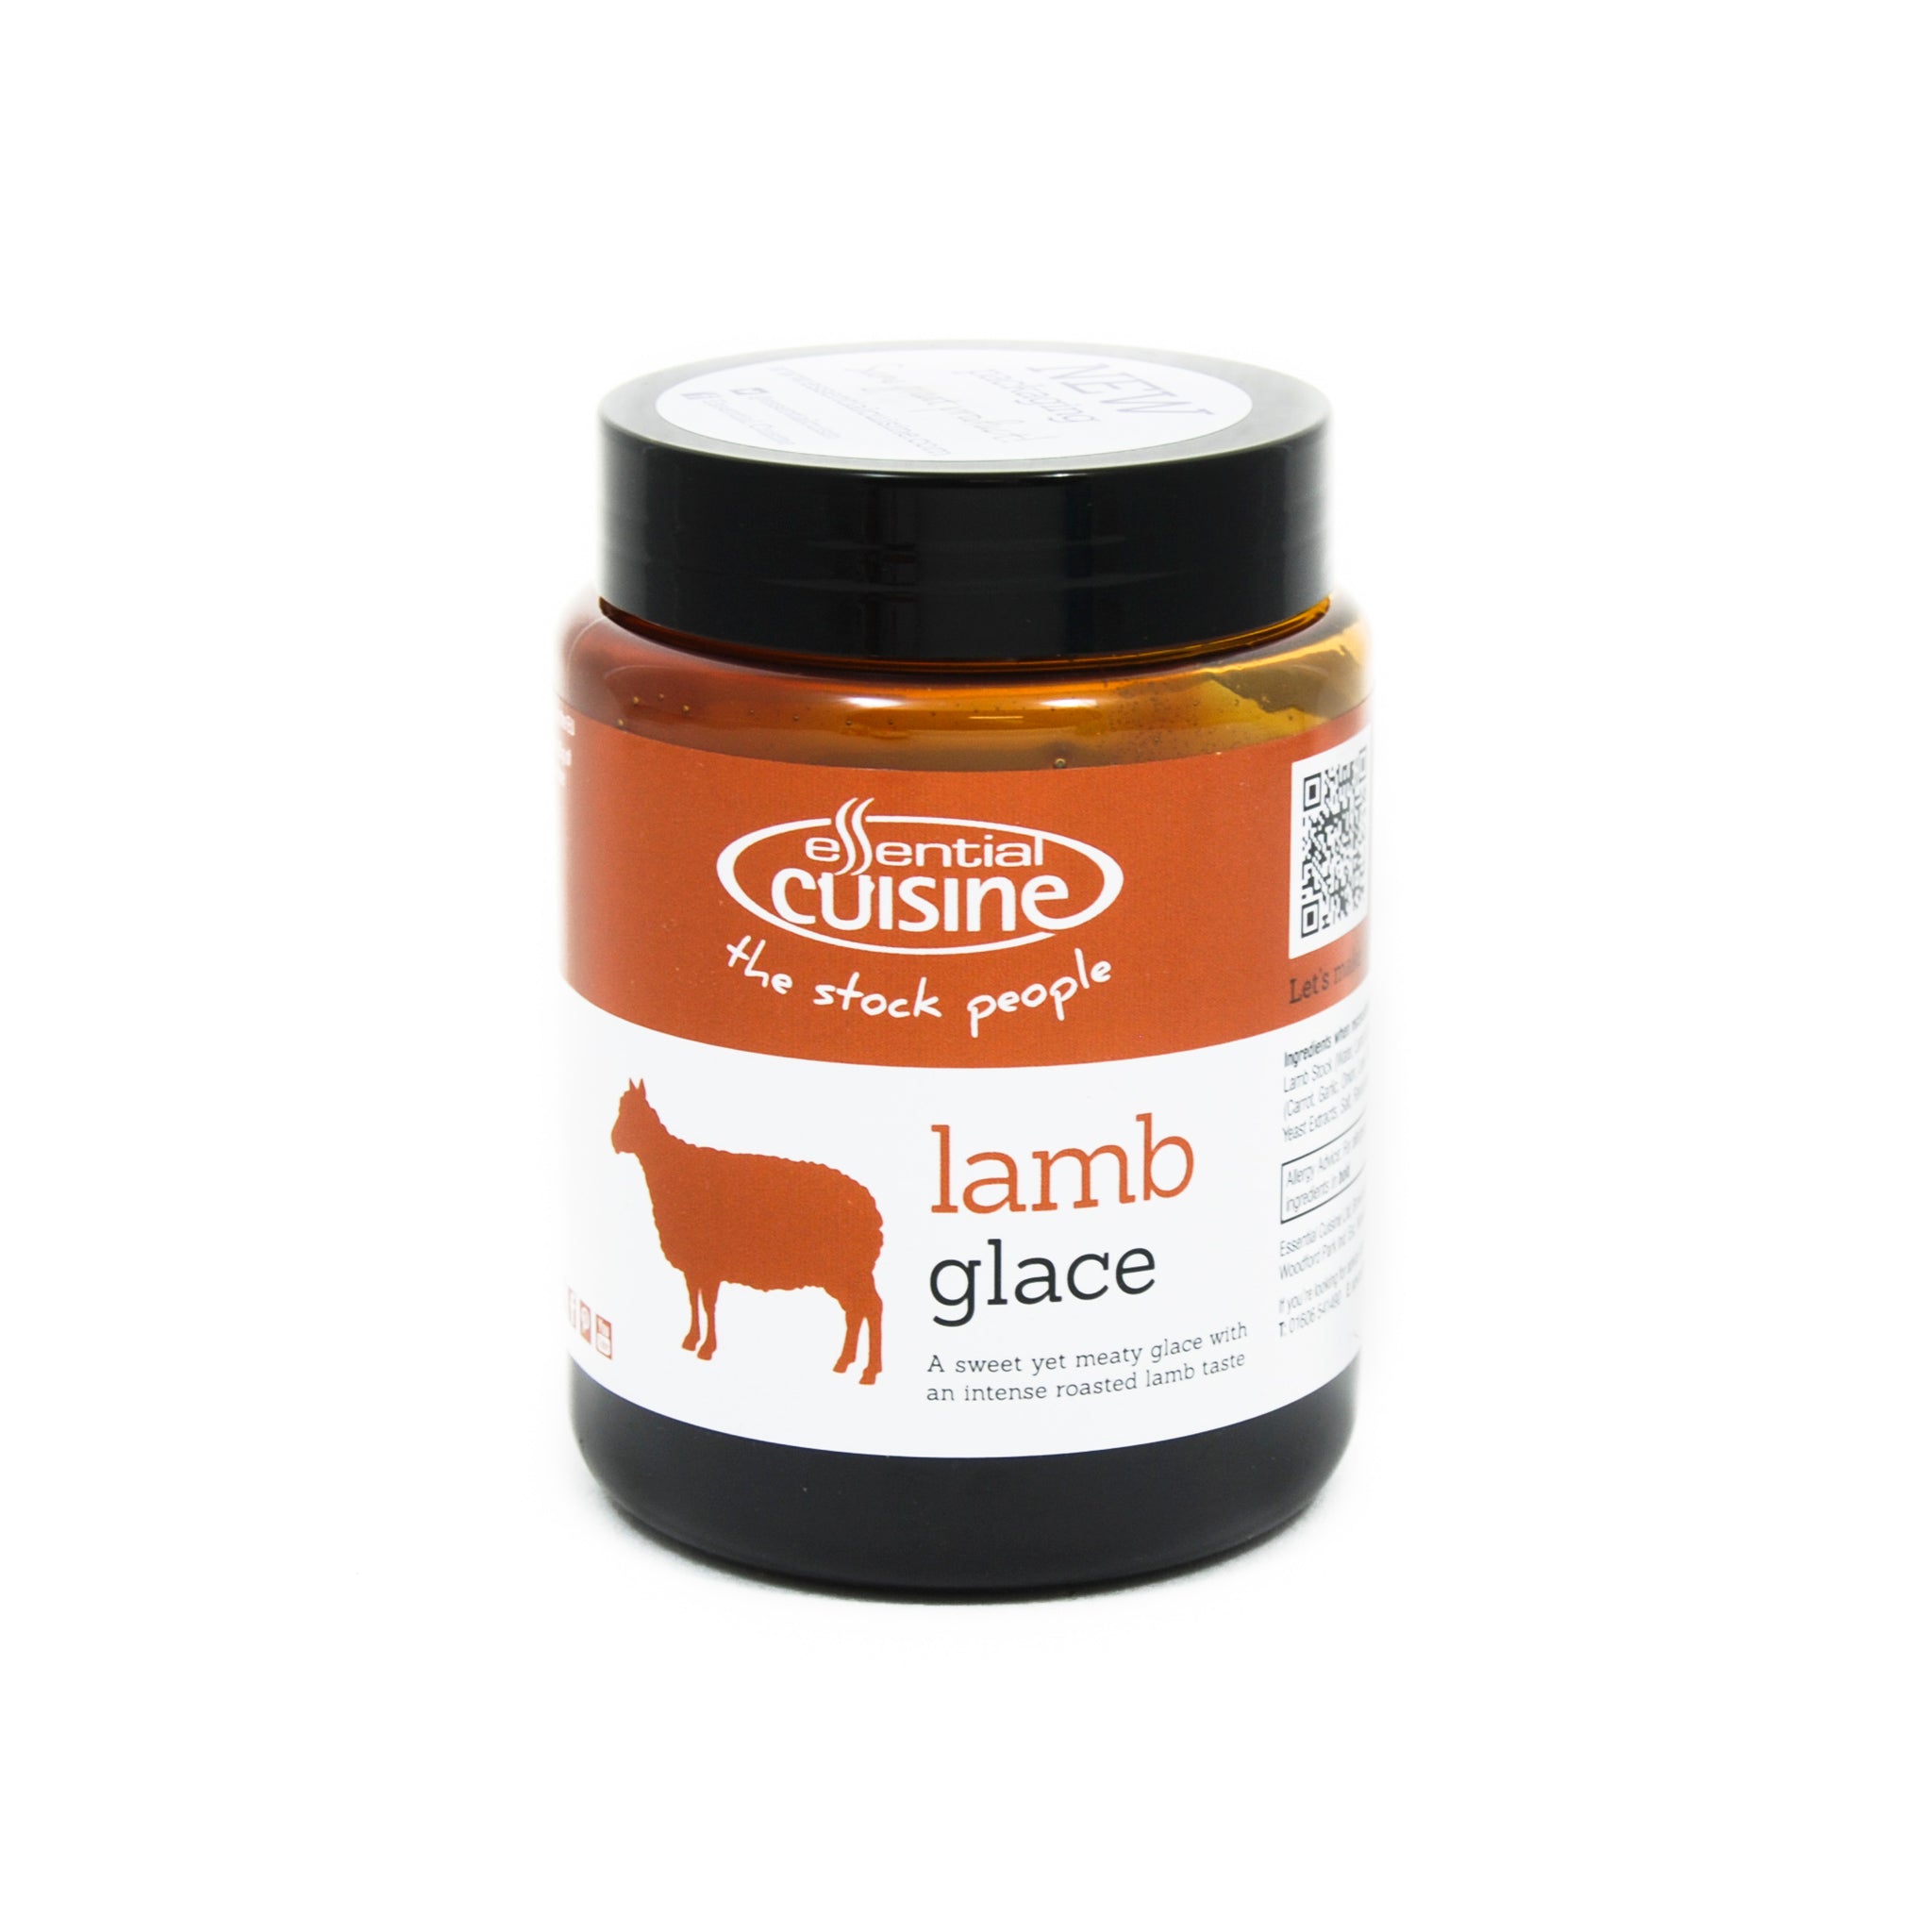 Essential Cuisine Lamb Glace 600g Ingredients Seasonings